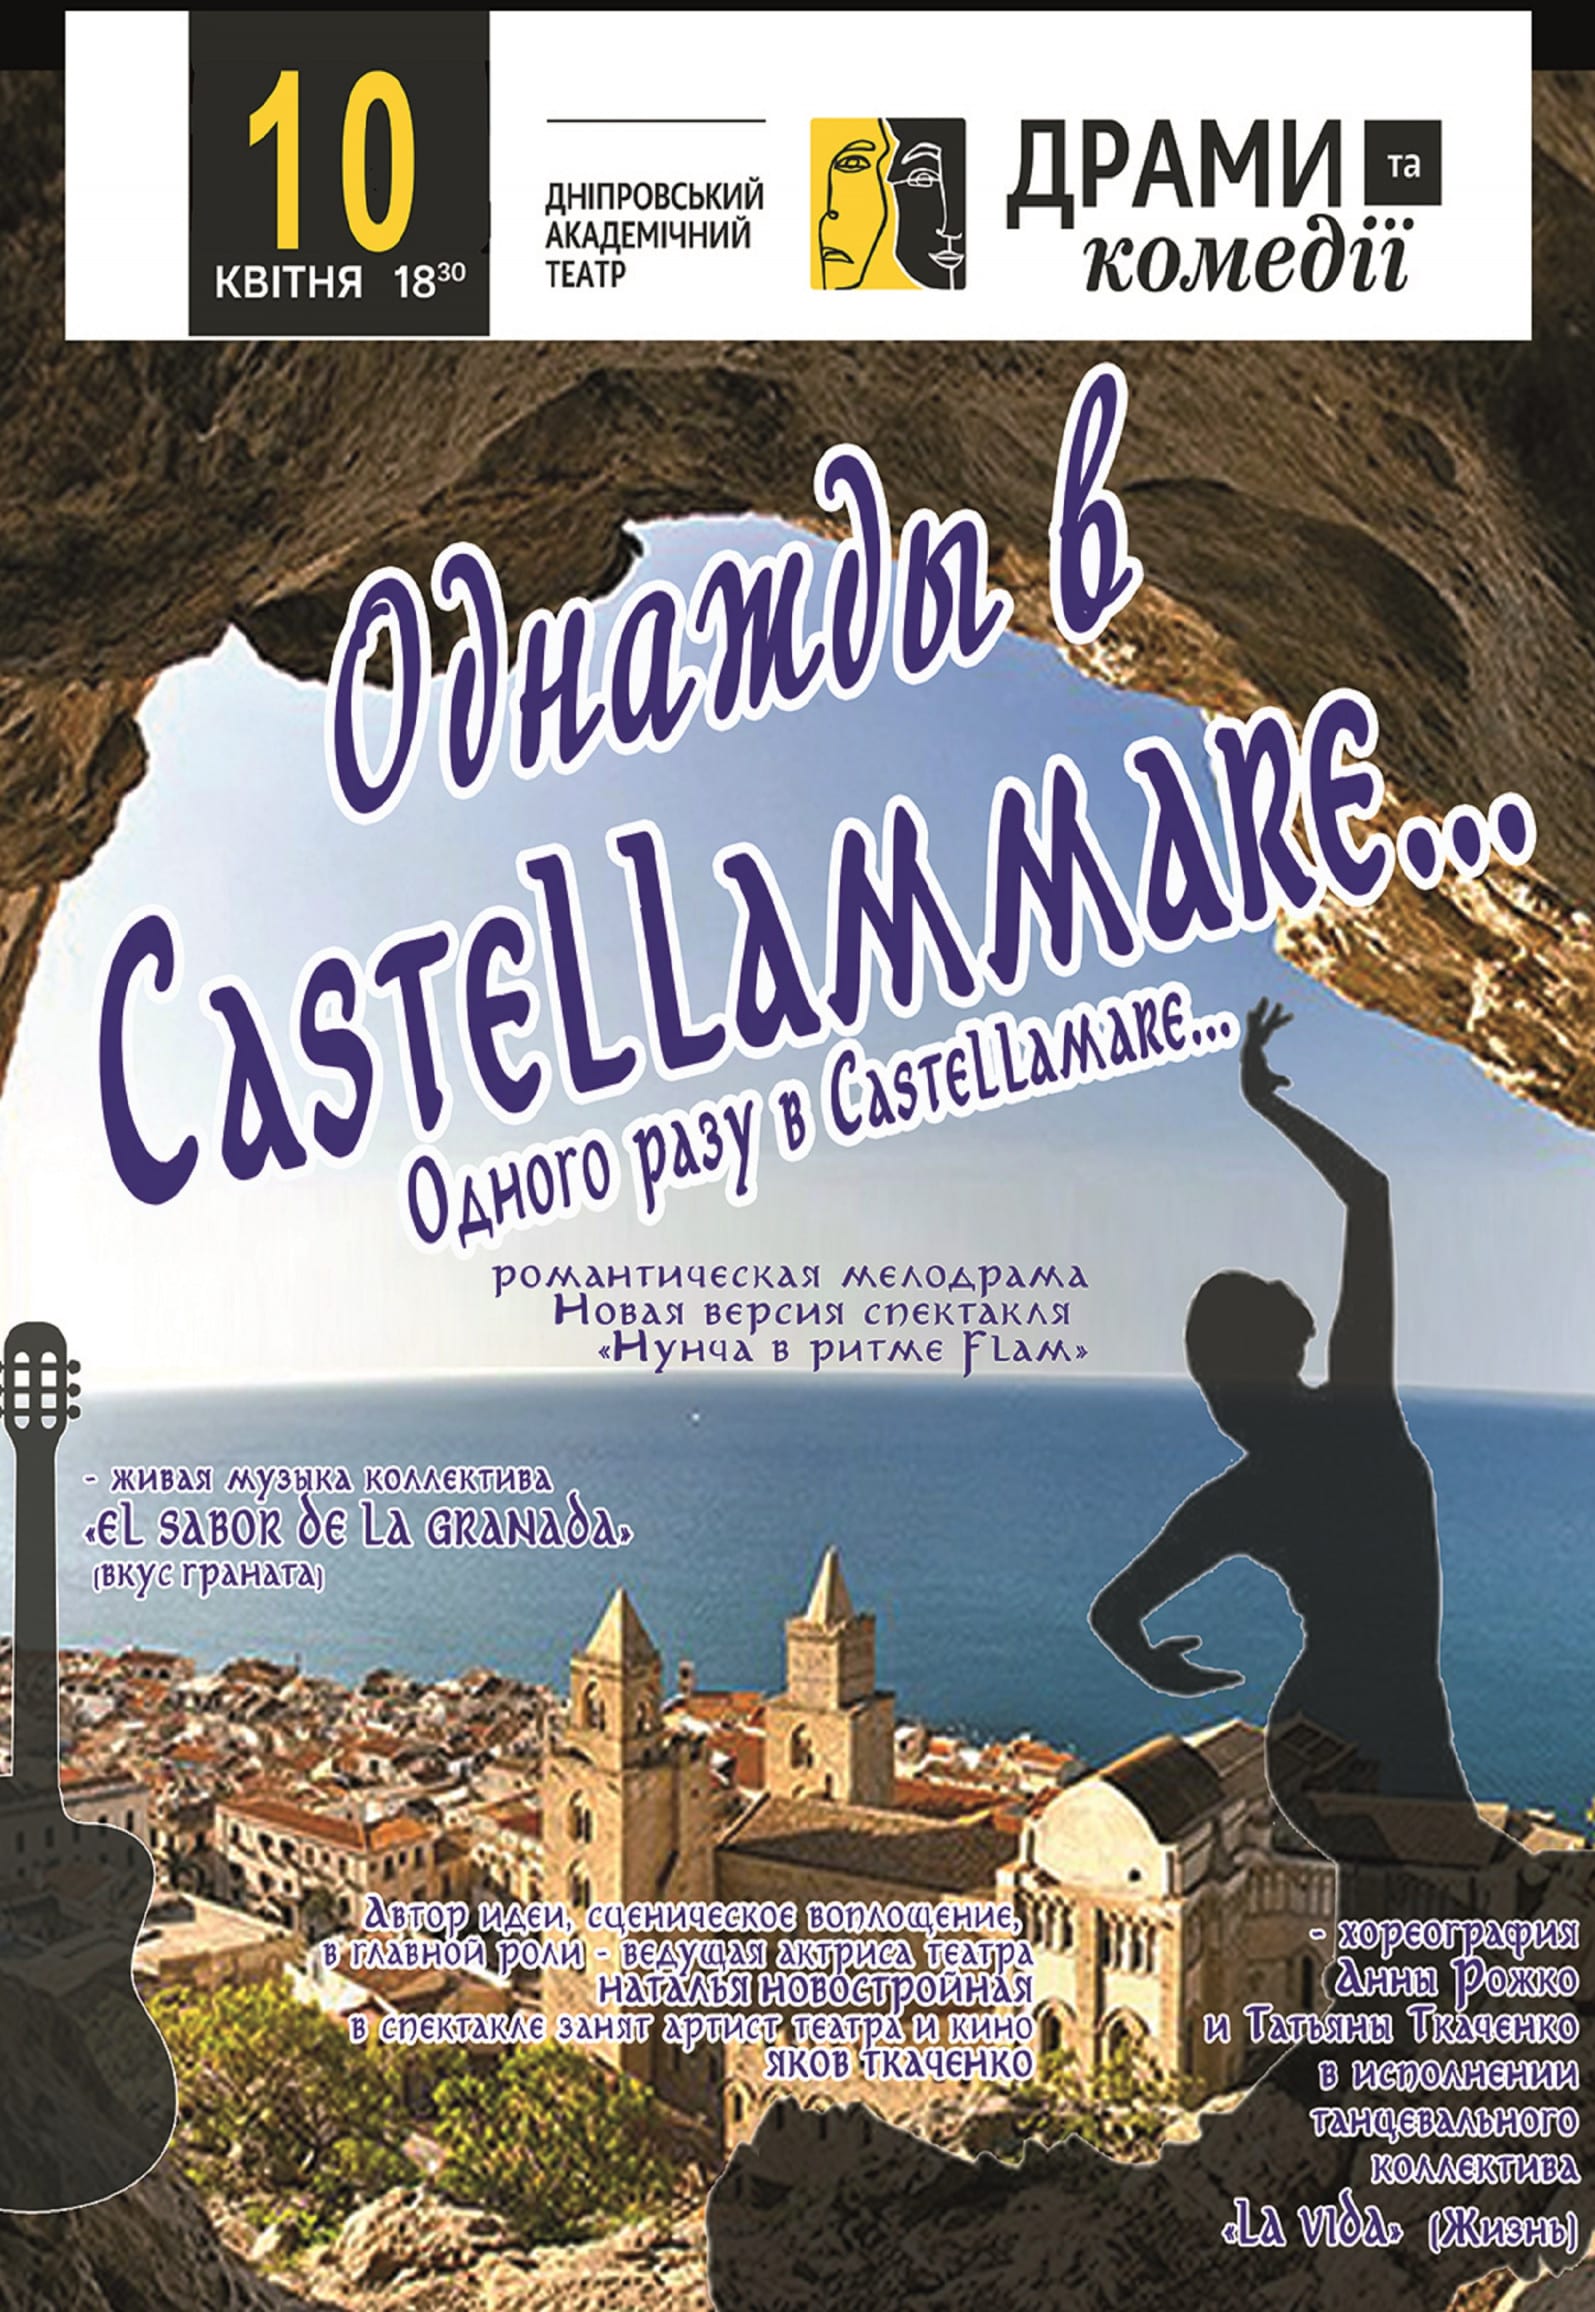 Однажды в Castellammare Днепр, 10.04.2019, цена, расписание, купить билеты. Афиша Днепра